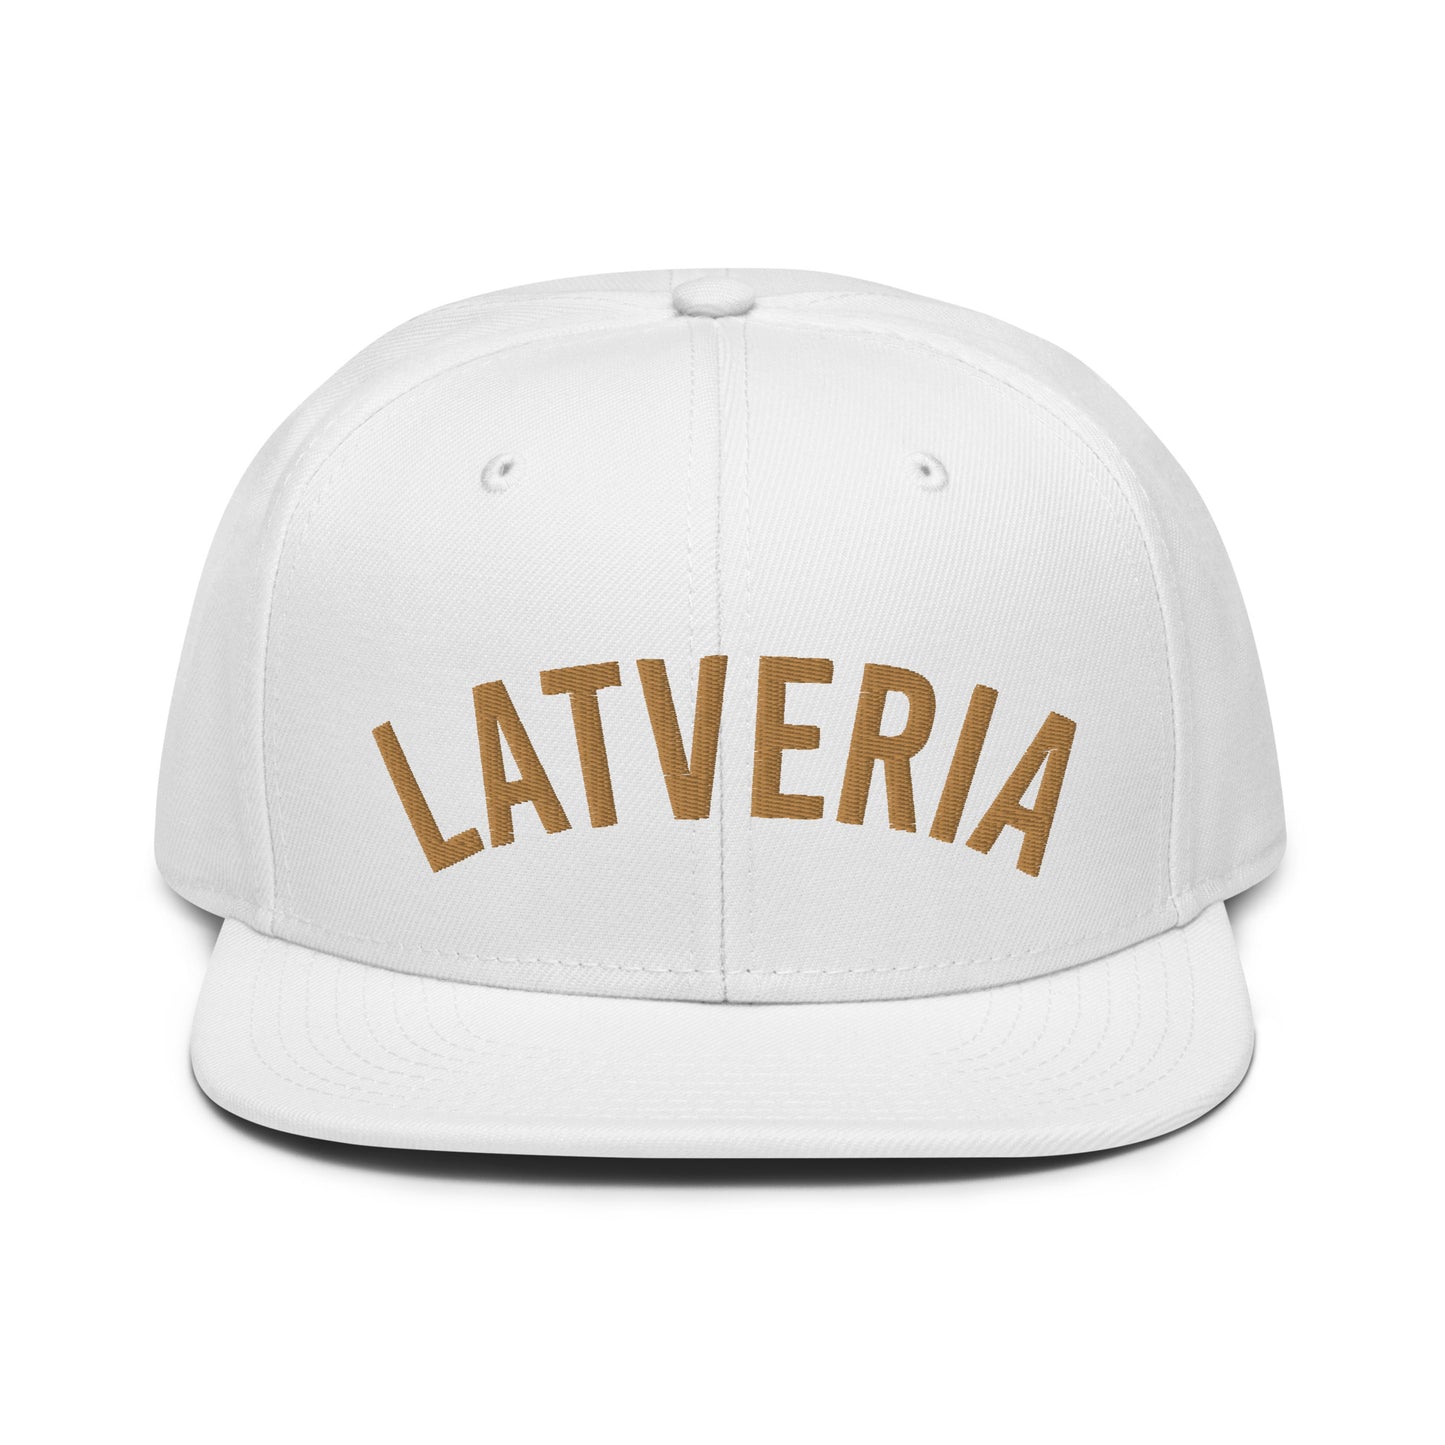 Latveria Home Team snapback hat